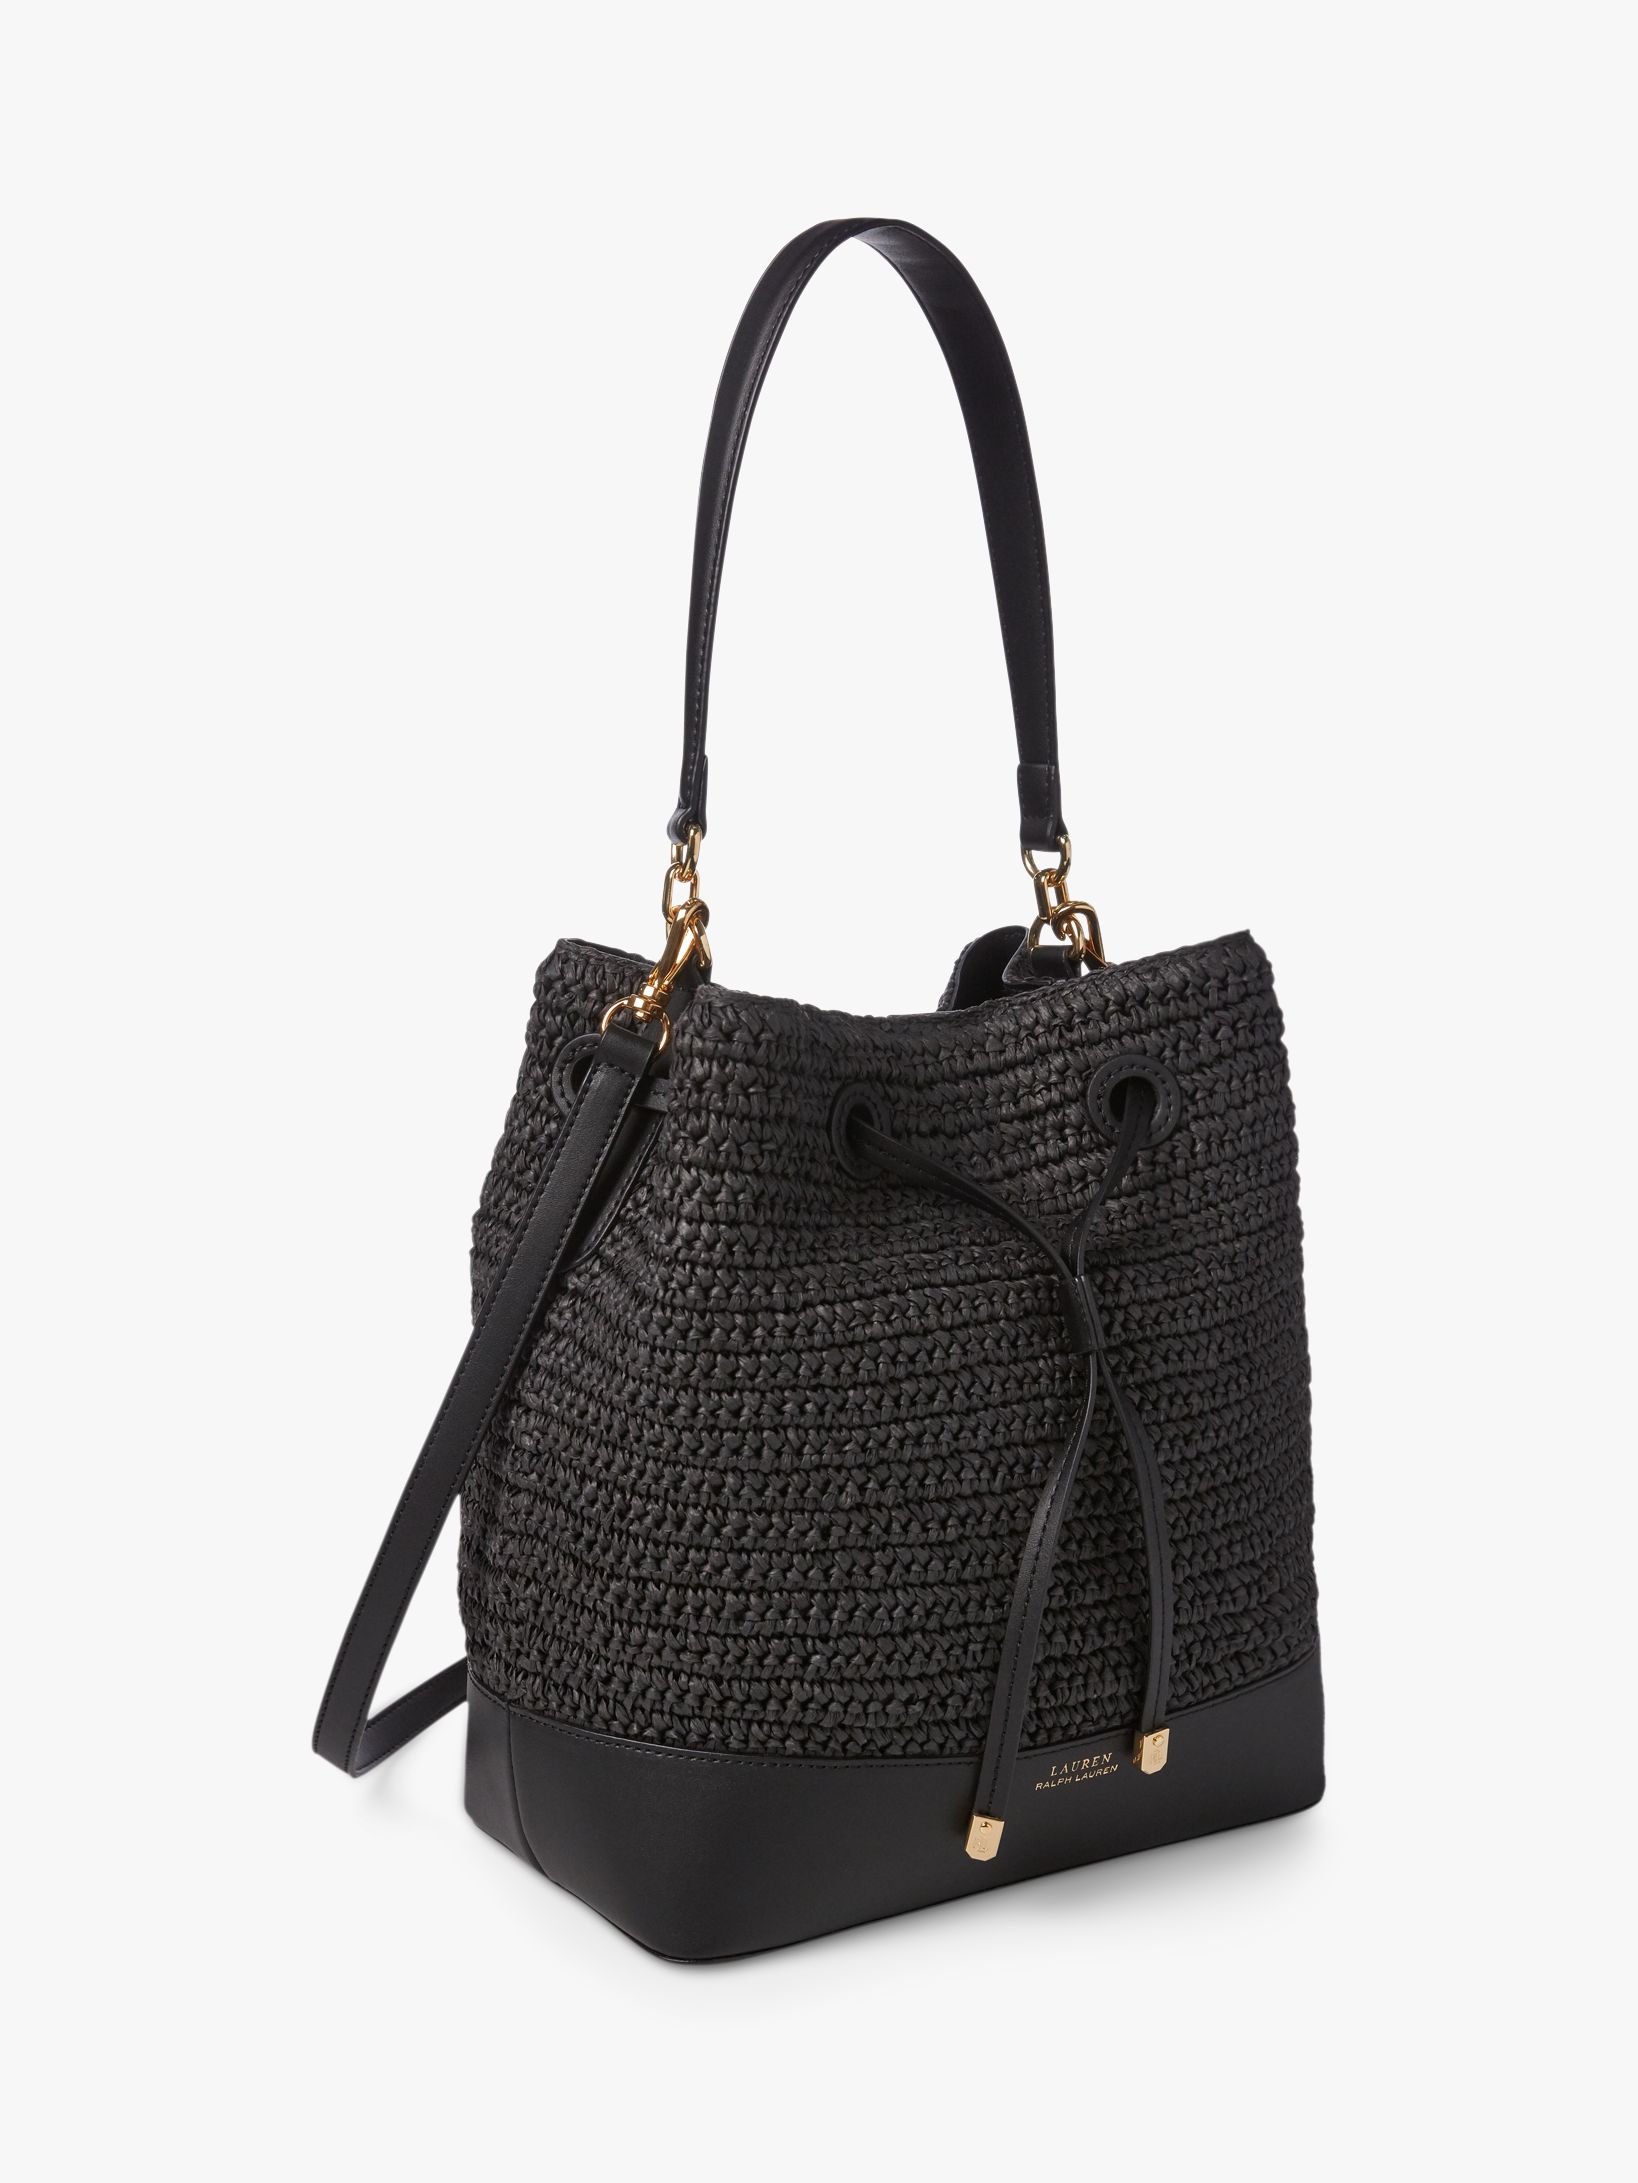 Lauren Ralph Lauren Straw Handbags | semashow.com